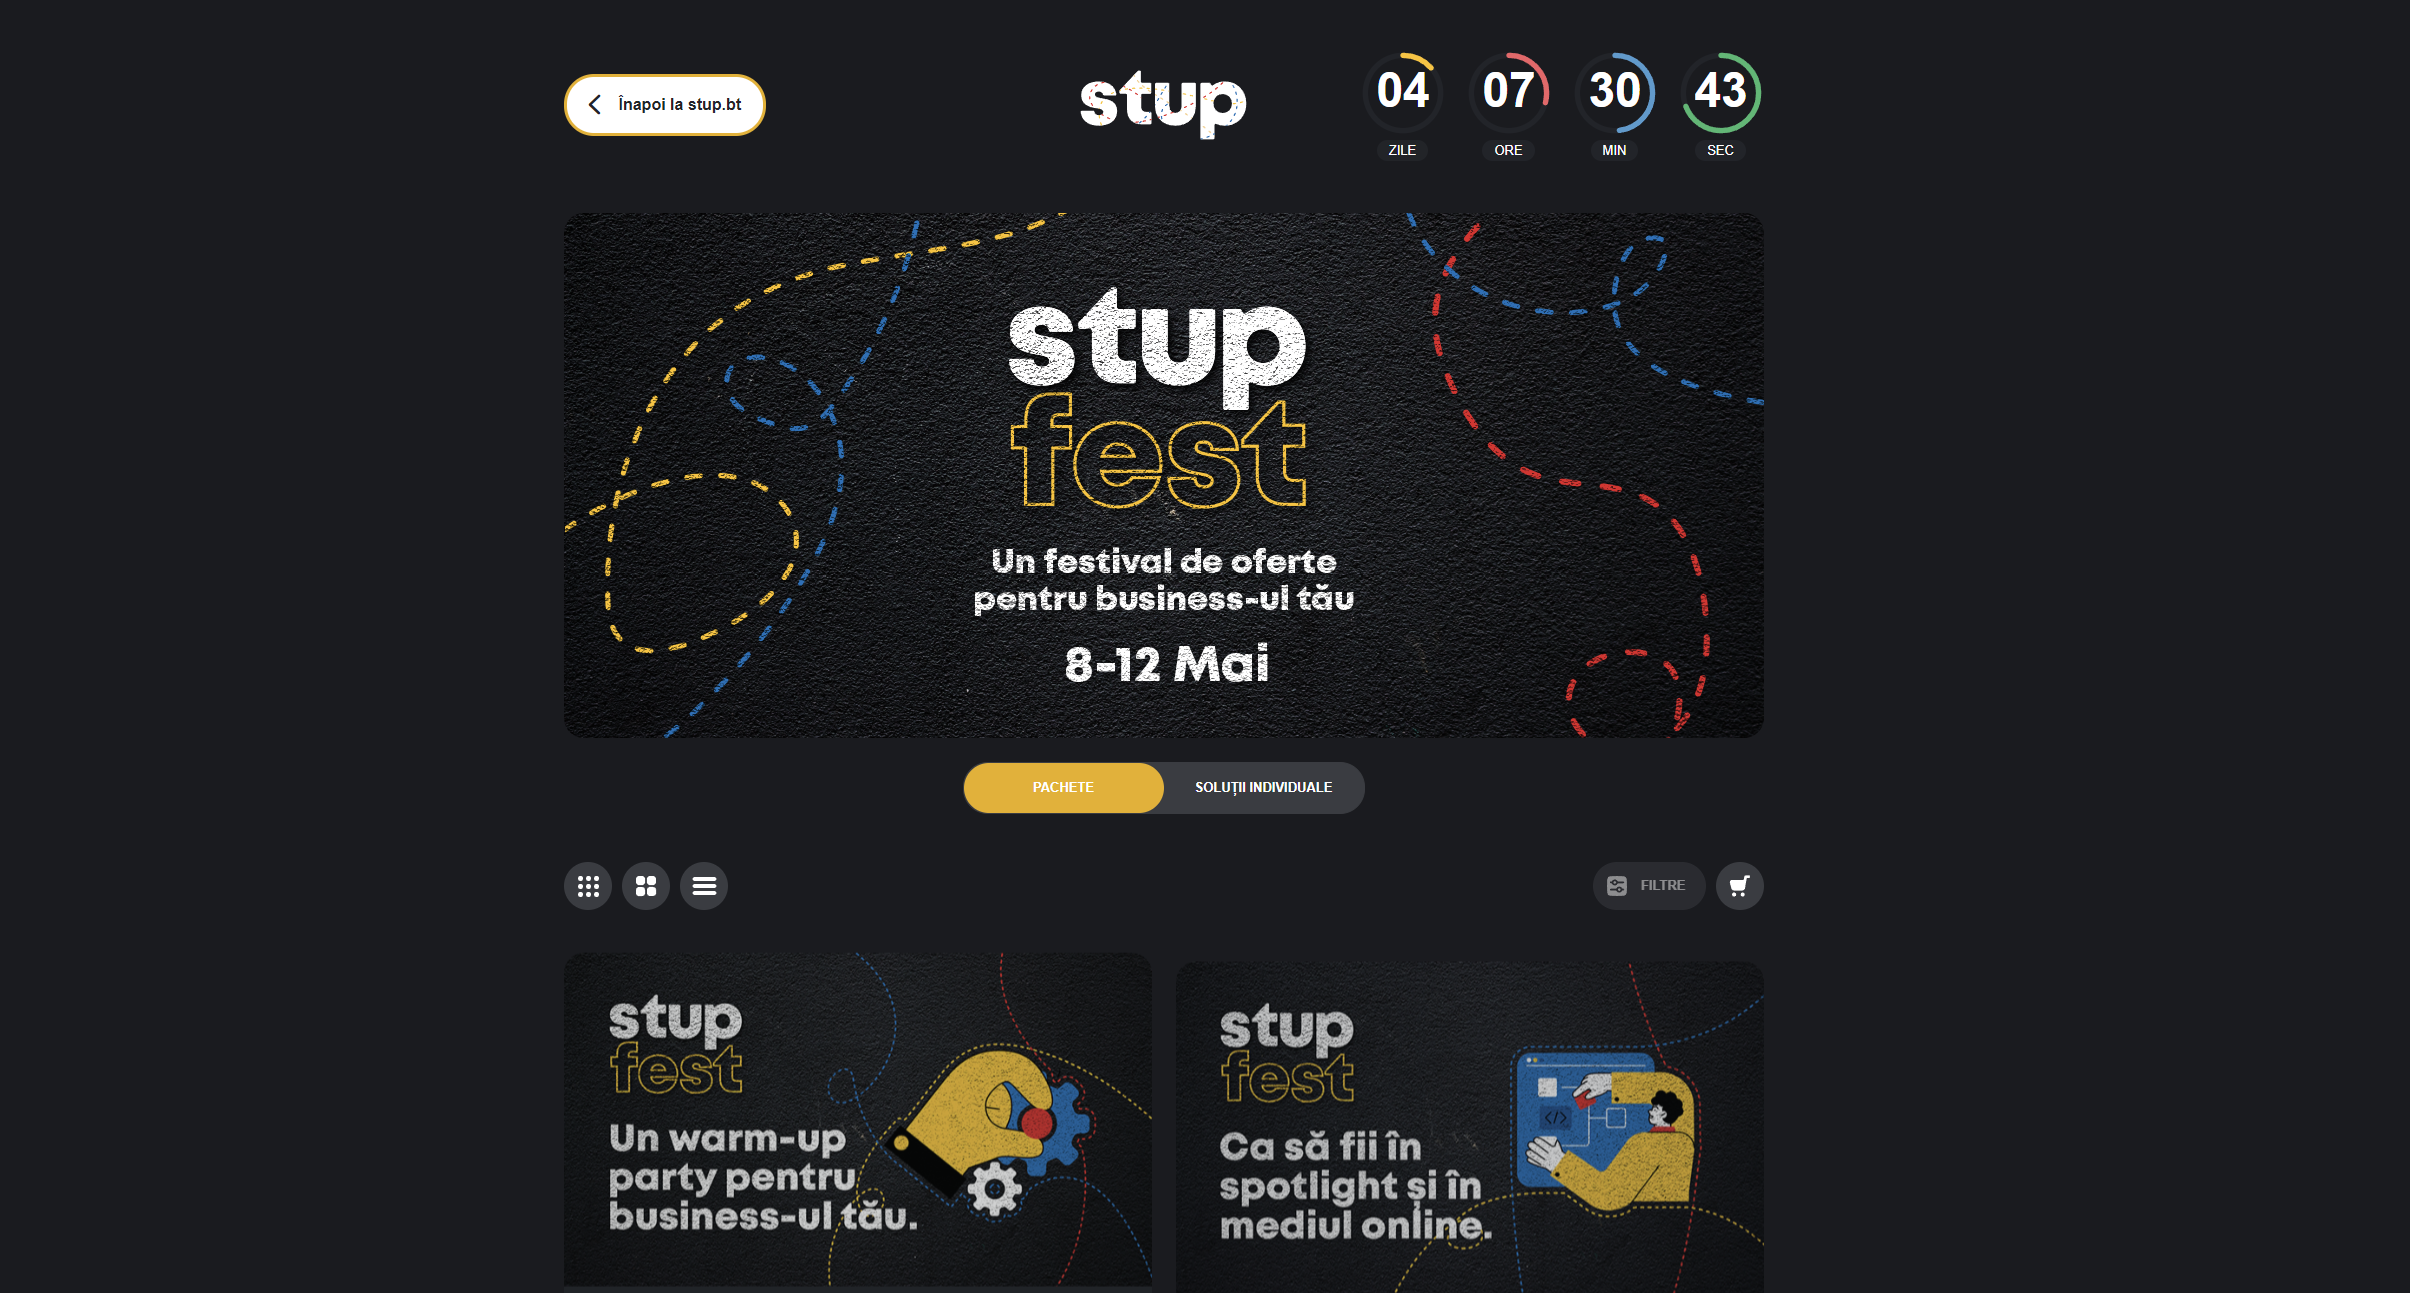 Banca Transilvania a lansat Stup Fest, un proiect prin care pune la dispoziţia antreprenorilor din Bucureşti soluţii pentru înfiinţarea unei afaceri sau pentru dezvoltarea în online